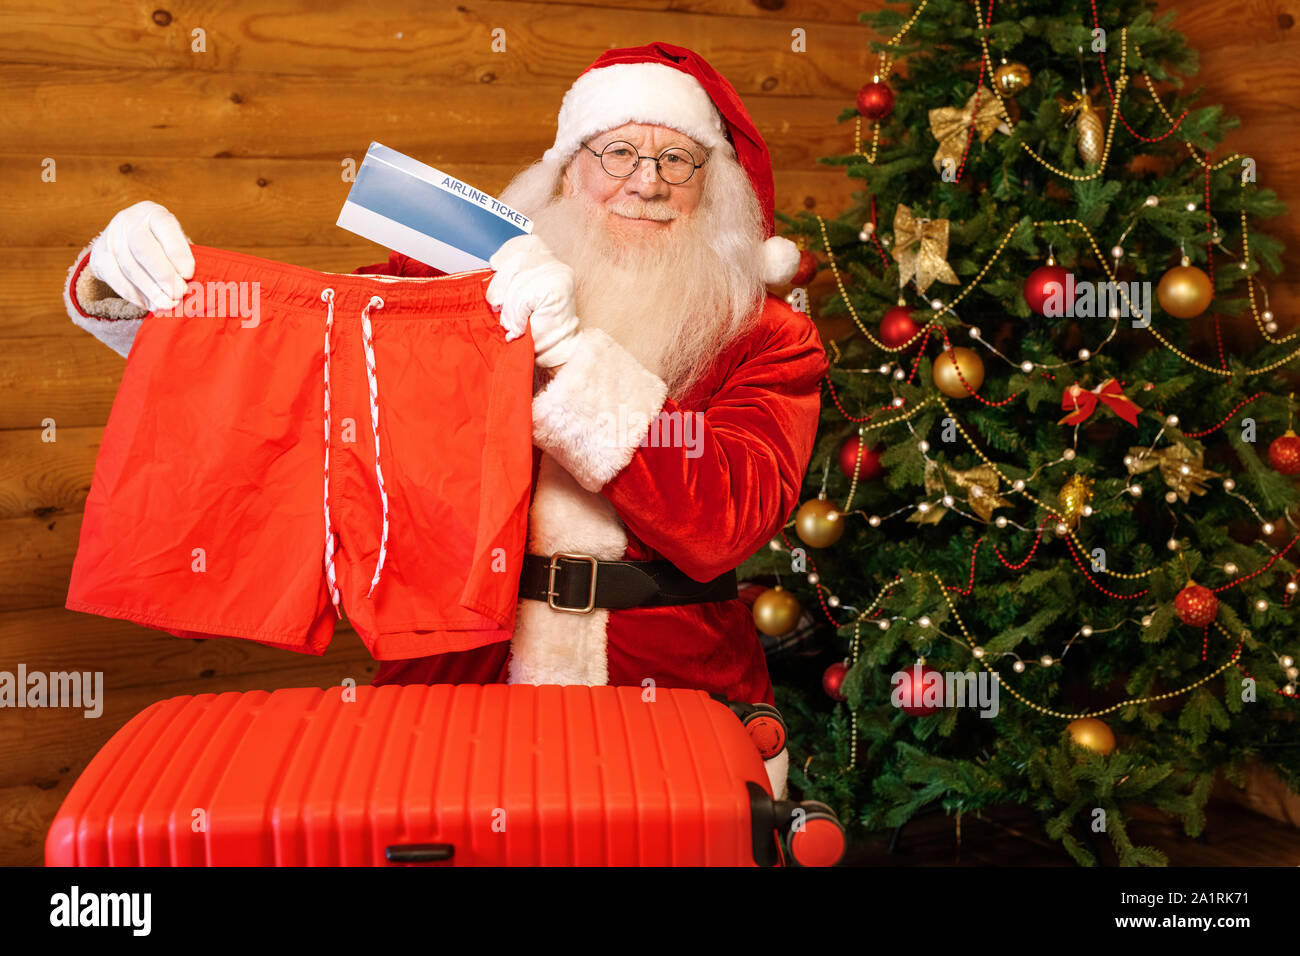 Santa-Übersicht der Weihnachtsgeschenke - rote Shorts und Flugtickets - bei der Stellung von eingerichtet firtree Stockfoto